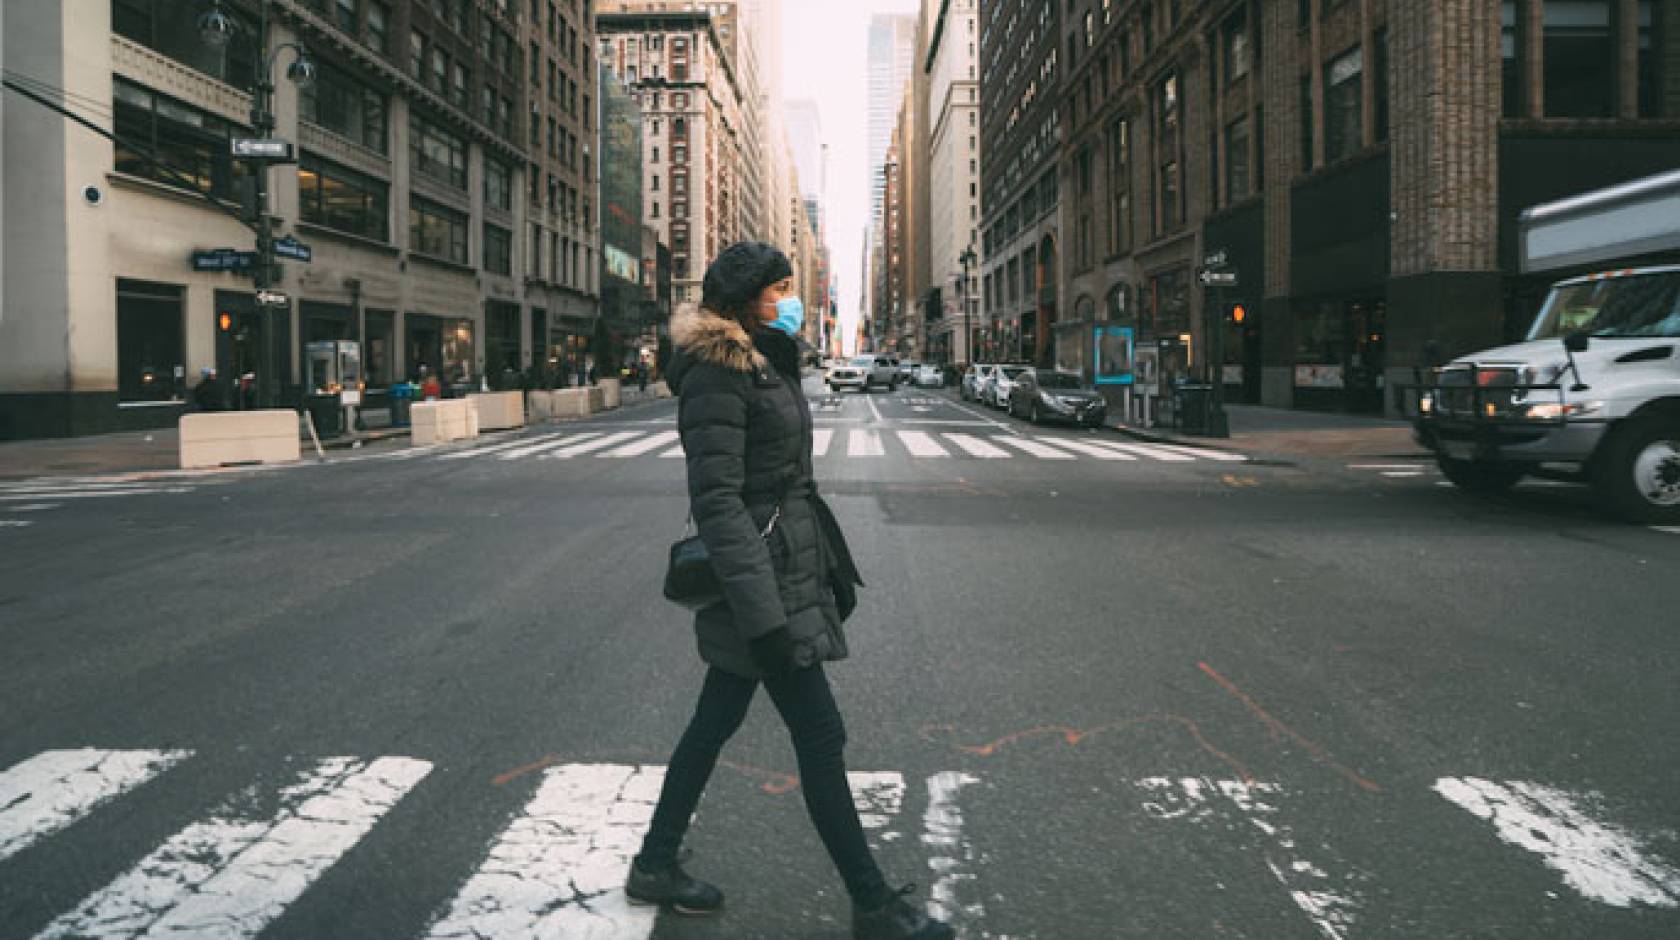 Woman walks down empty city street wearing a mask